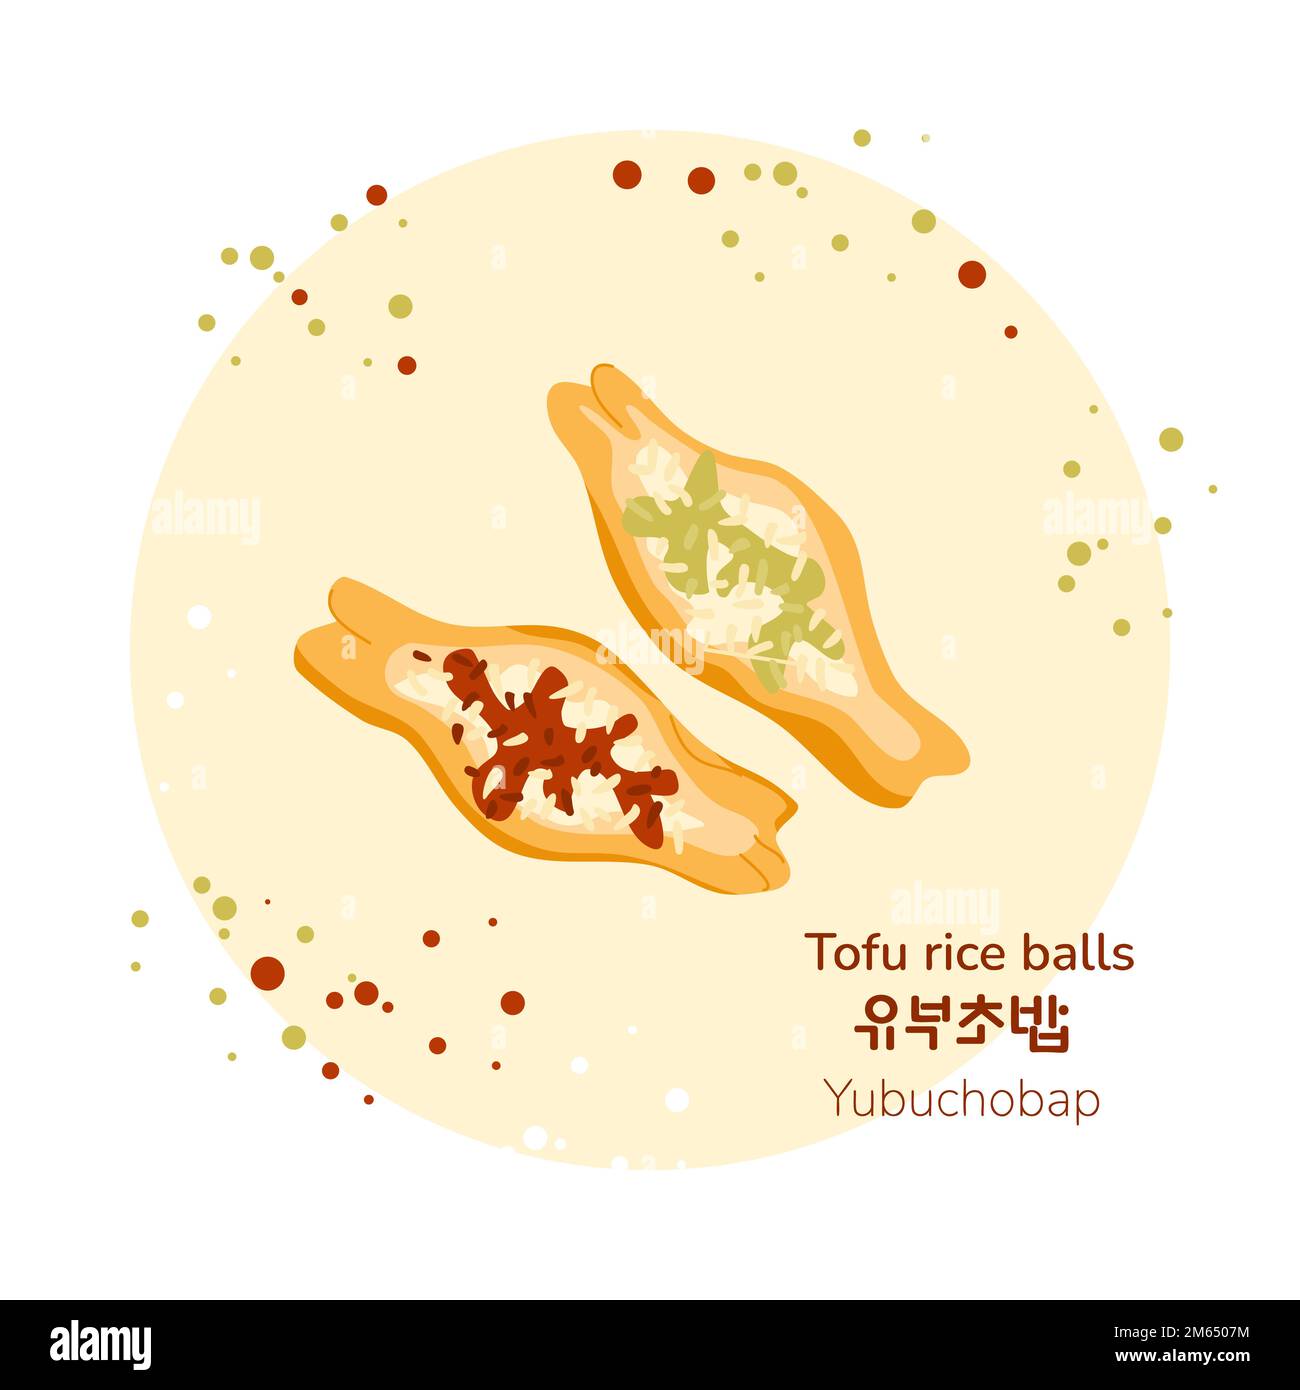 Balles de riz tofu traditionnel coréen avec différentes affiches de remplissage. Yubuchobap coréen. Traduction de boules de riz tofu coréennes. Cuisine asiatique s Illustration de Vecteur